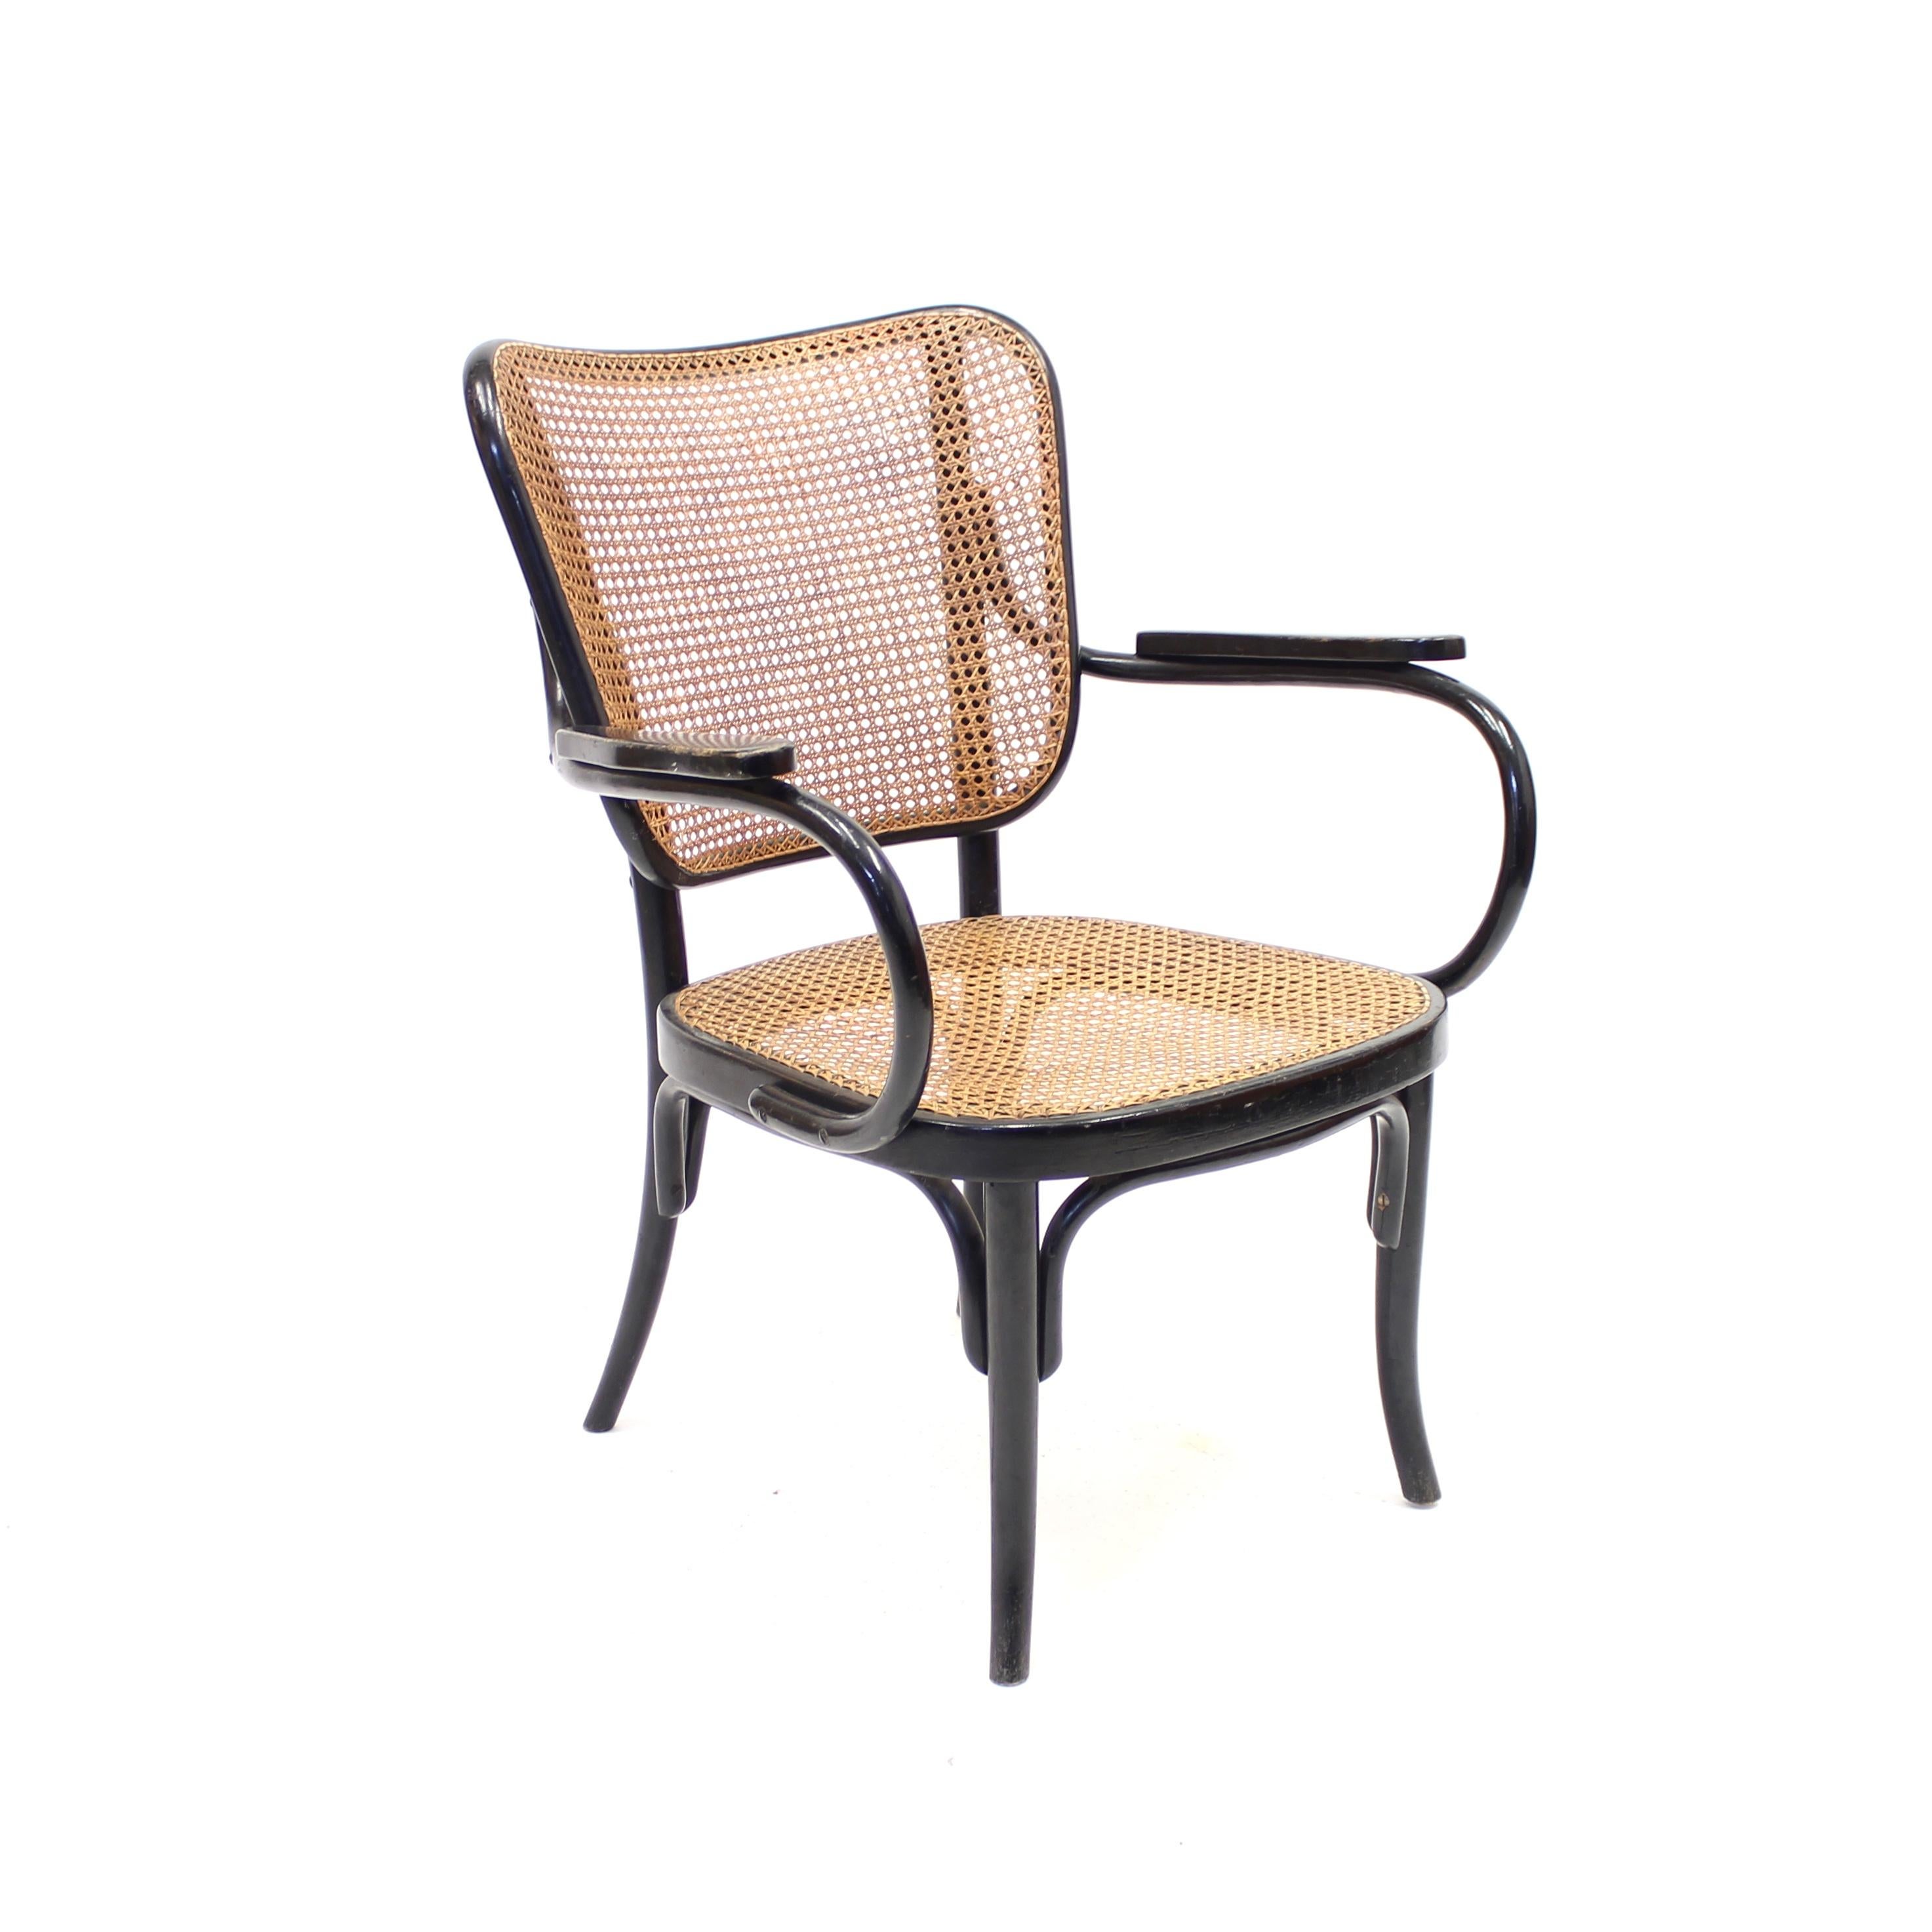 Seltener Sessel / Lounge Chair, entworfen von Eberhard Krauss für Thonet 1930 für die Ausstellung 